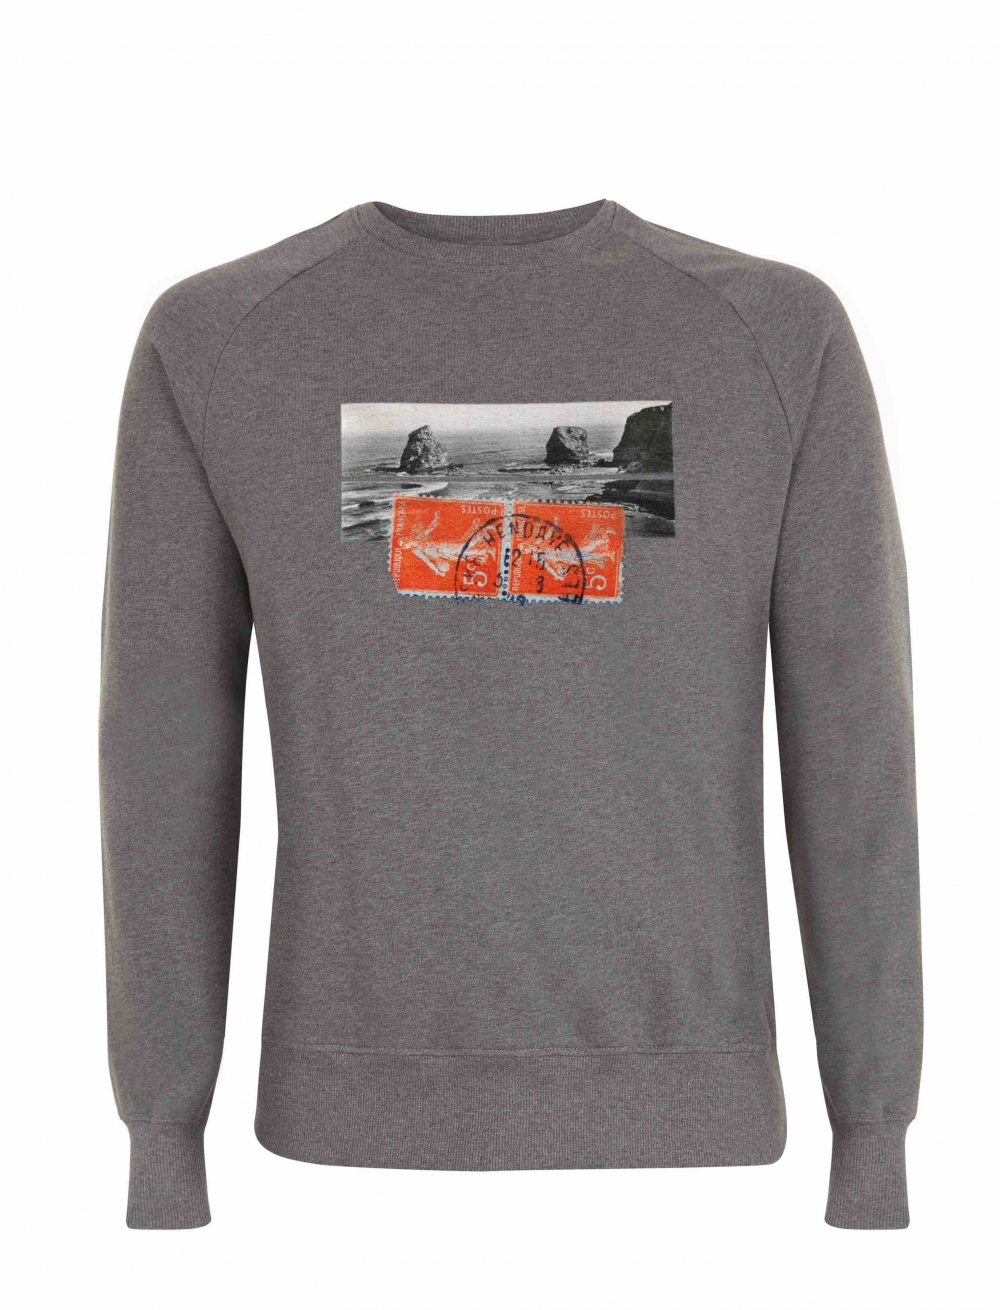 Organic cotton sweatshirt with a vintage image of Hendaye